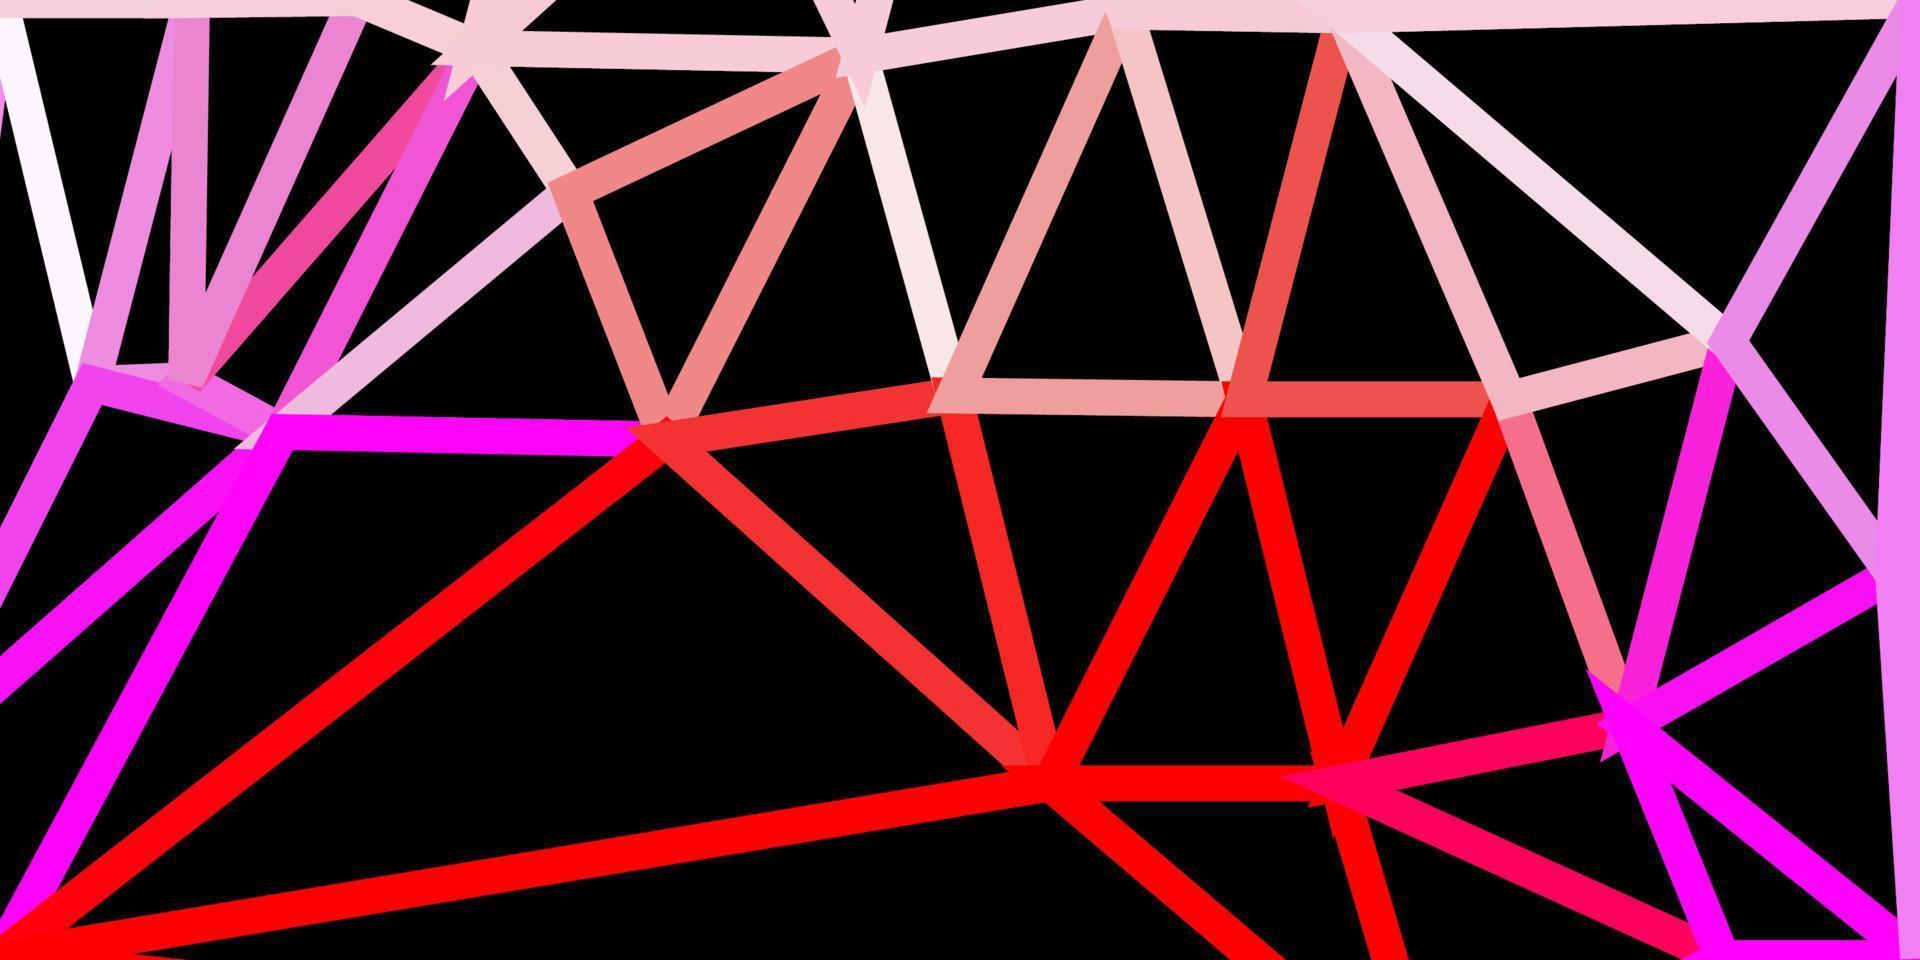 disegno poligonale geometrico di vettore rosa chiaro, rosso.